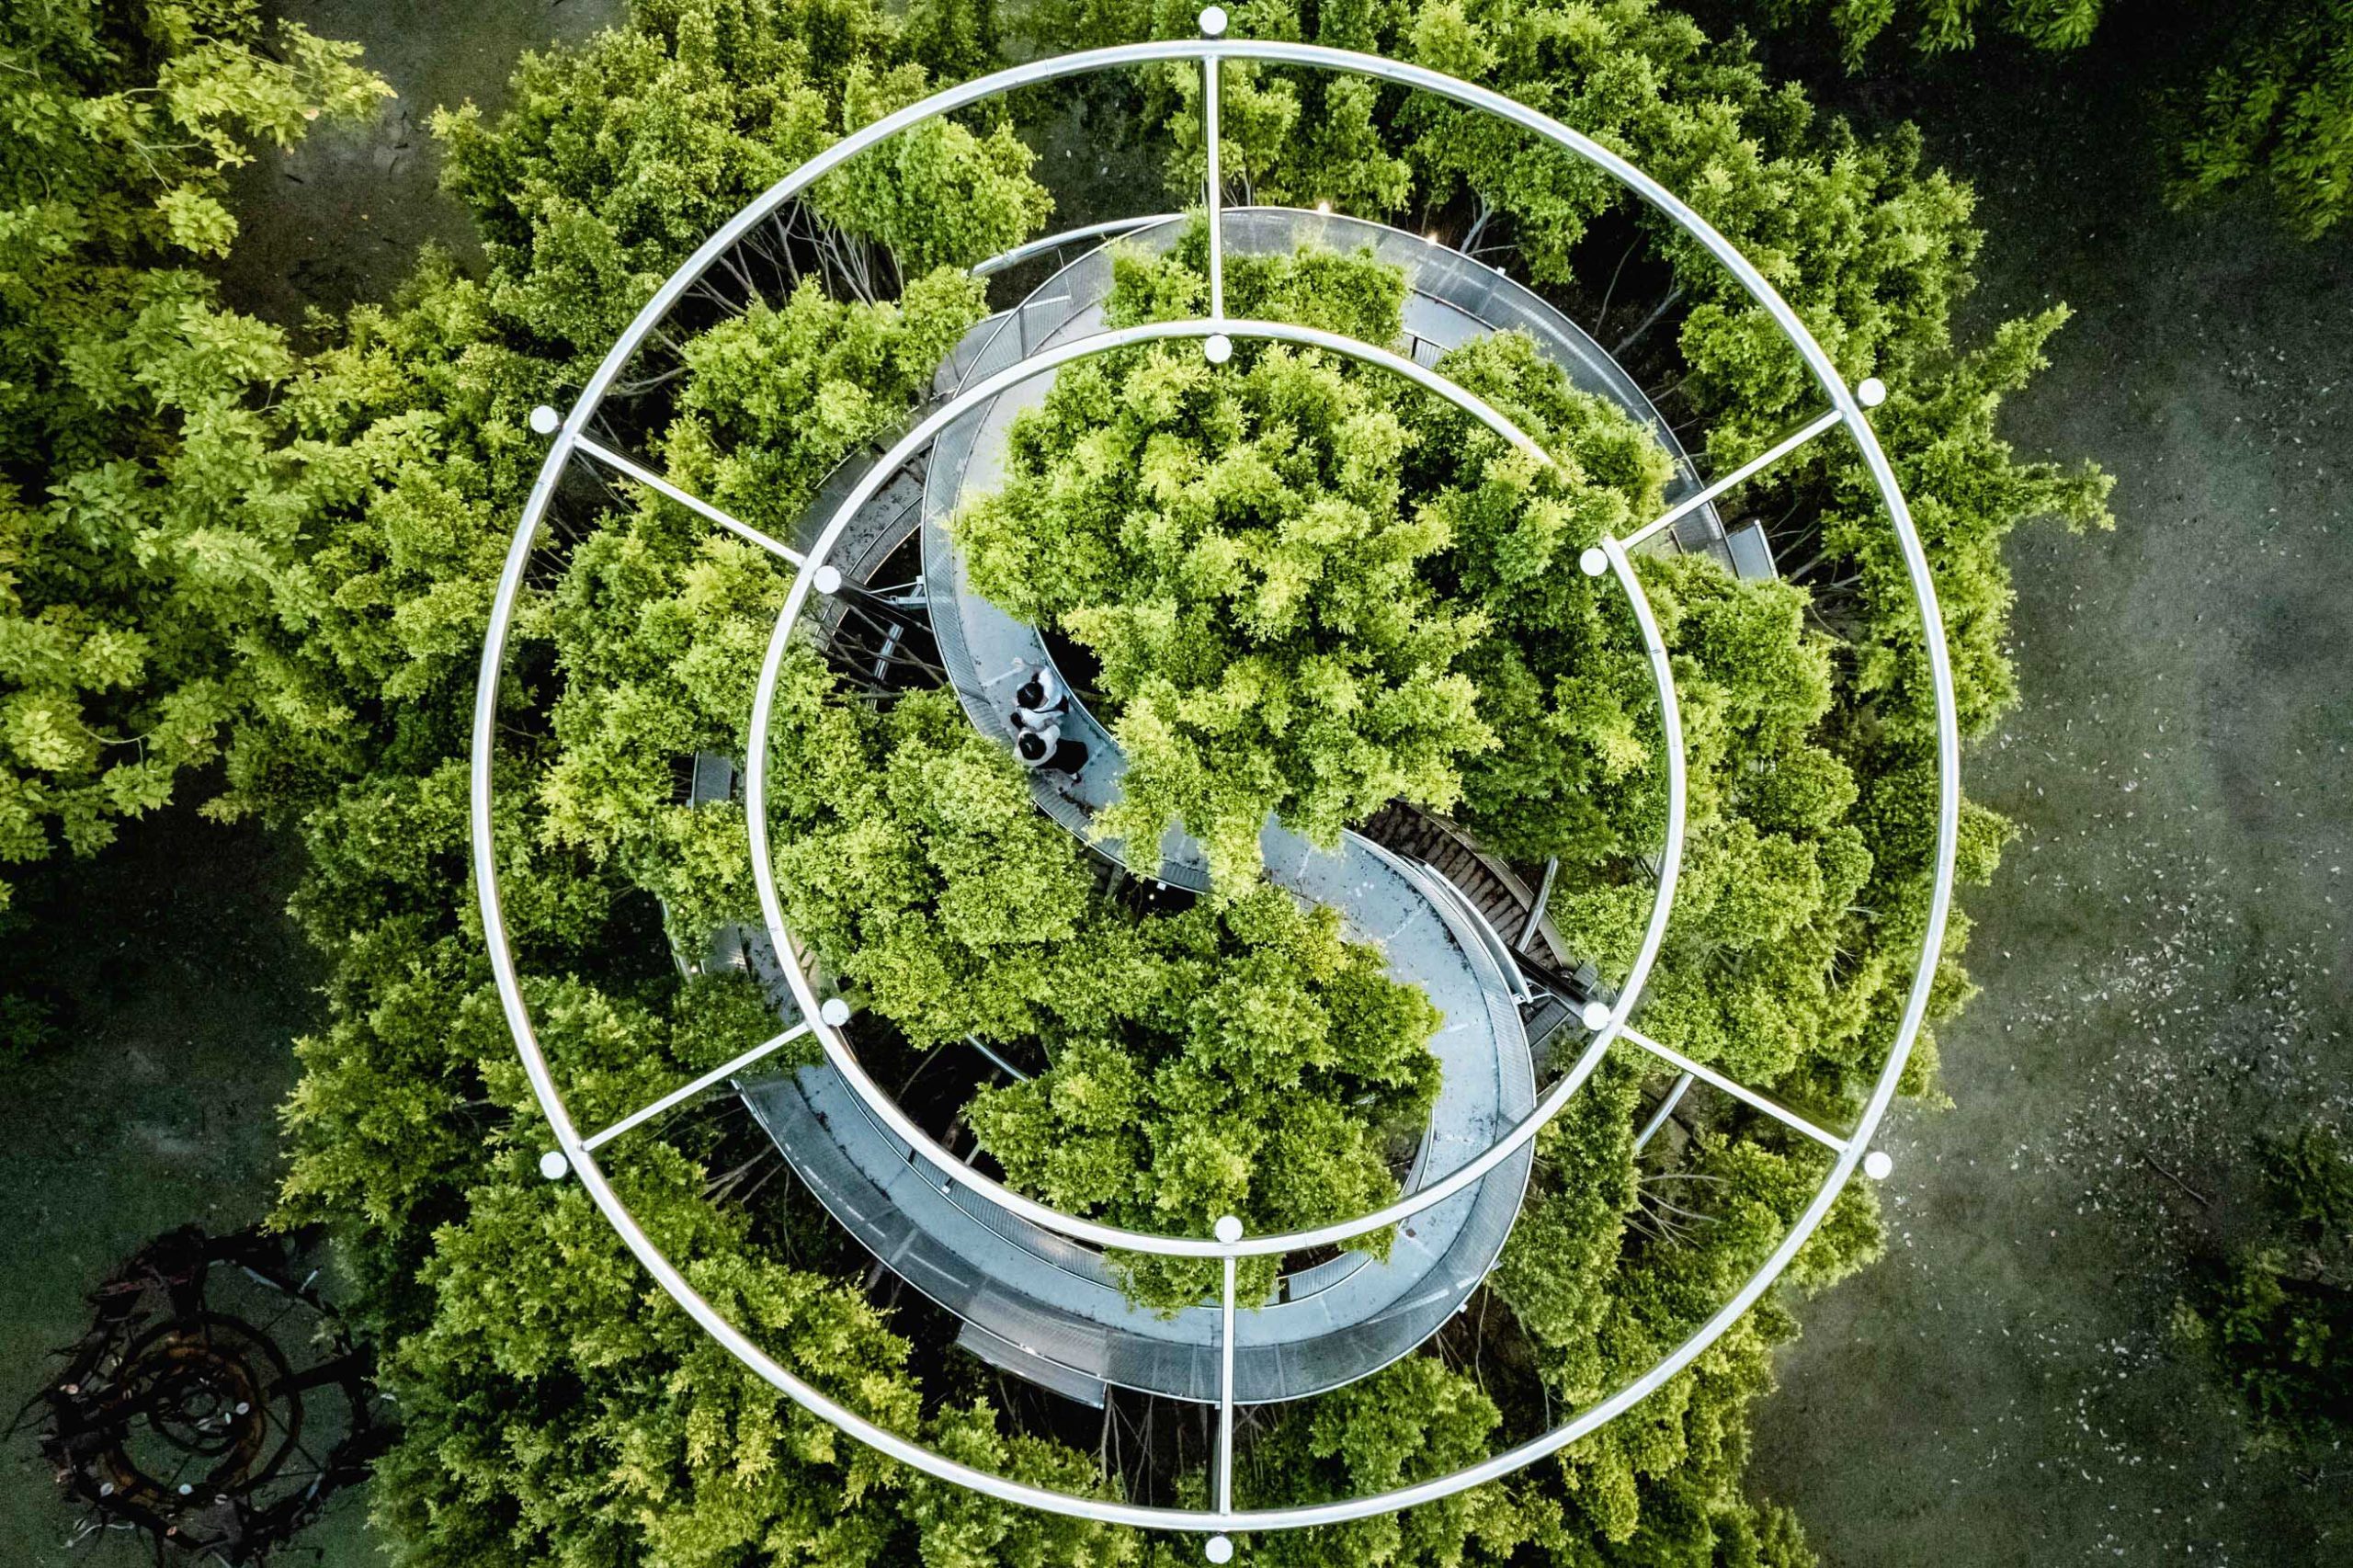 10《大樹宇宙-愛河森林慢板》這座360度環景作品，提供了民眾走上樹林登高遠眺港區風景的難得體驗。-1